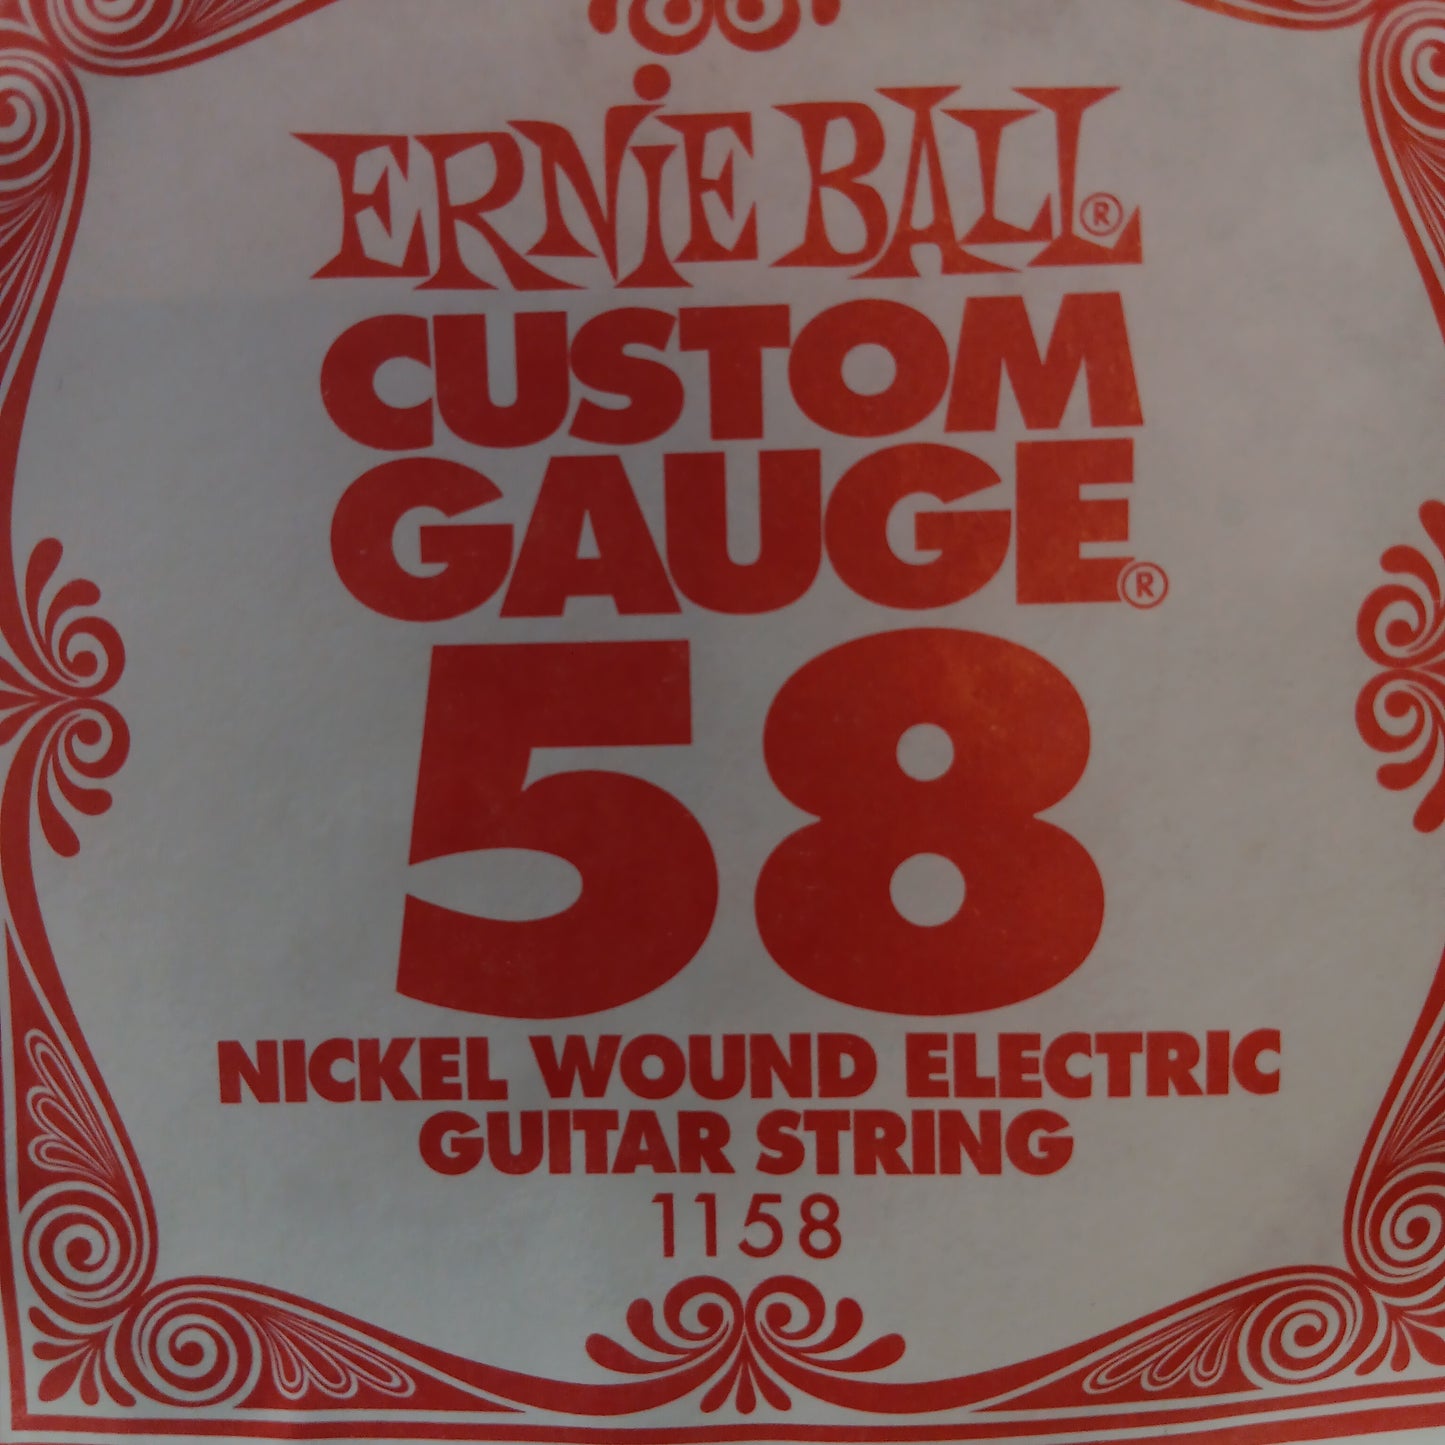 Ernie Ball Custom Gauge Nickel Wound Single Strings 1158/58
Gauge